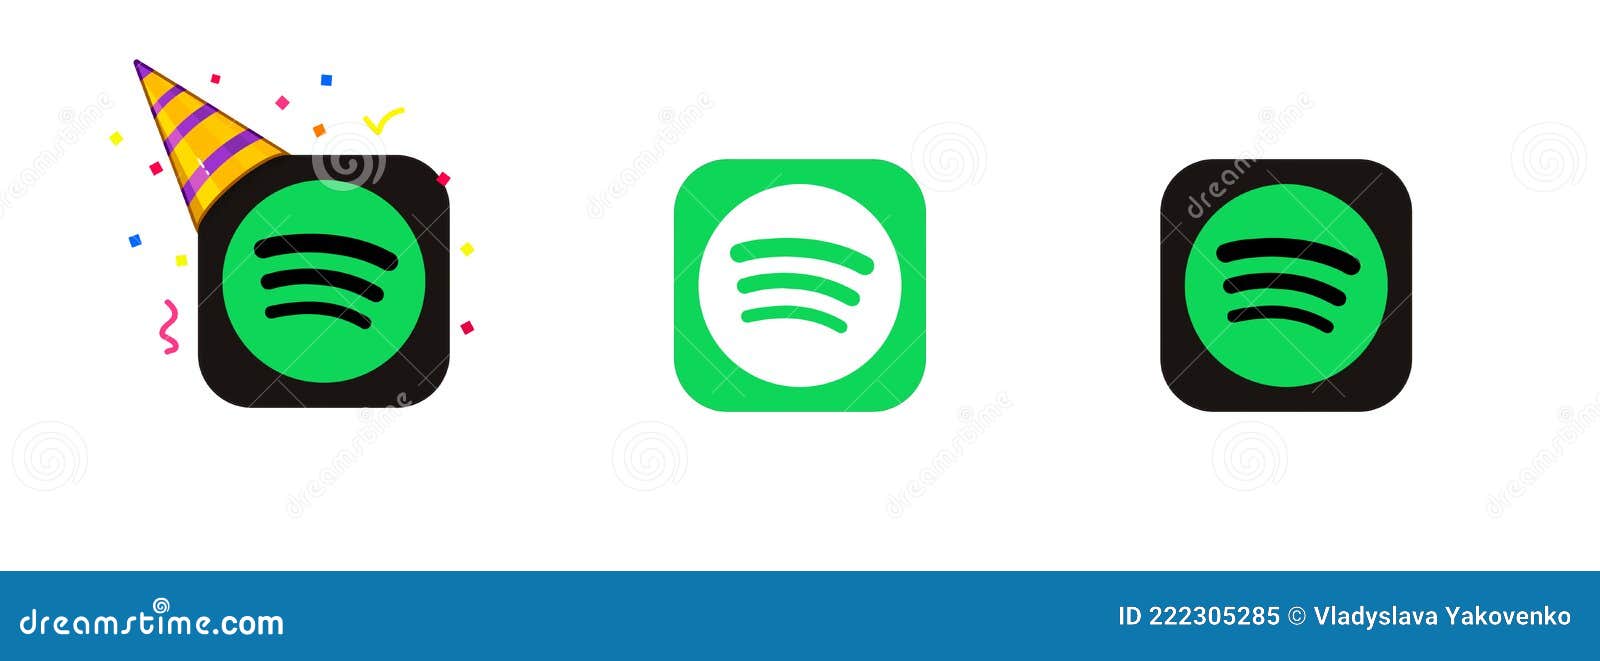 Set of Spotify Icons. Green Spotify Logo. Online Spotify. Logo